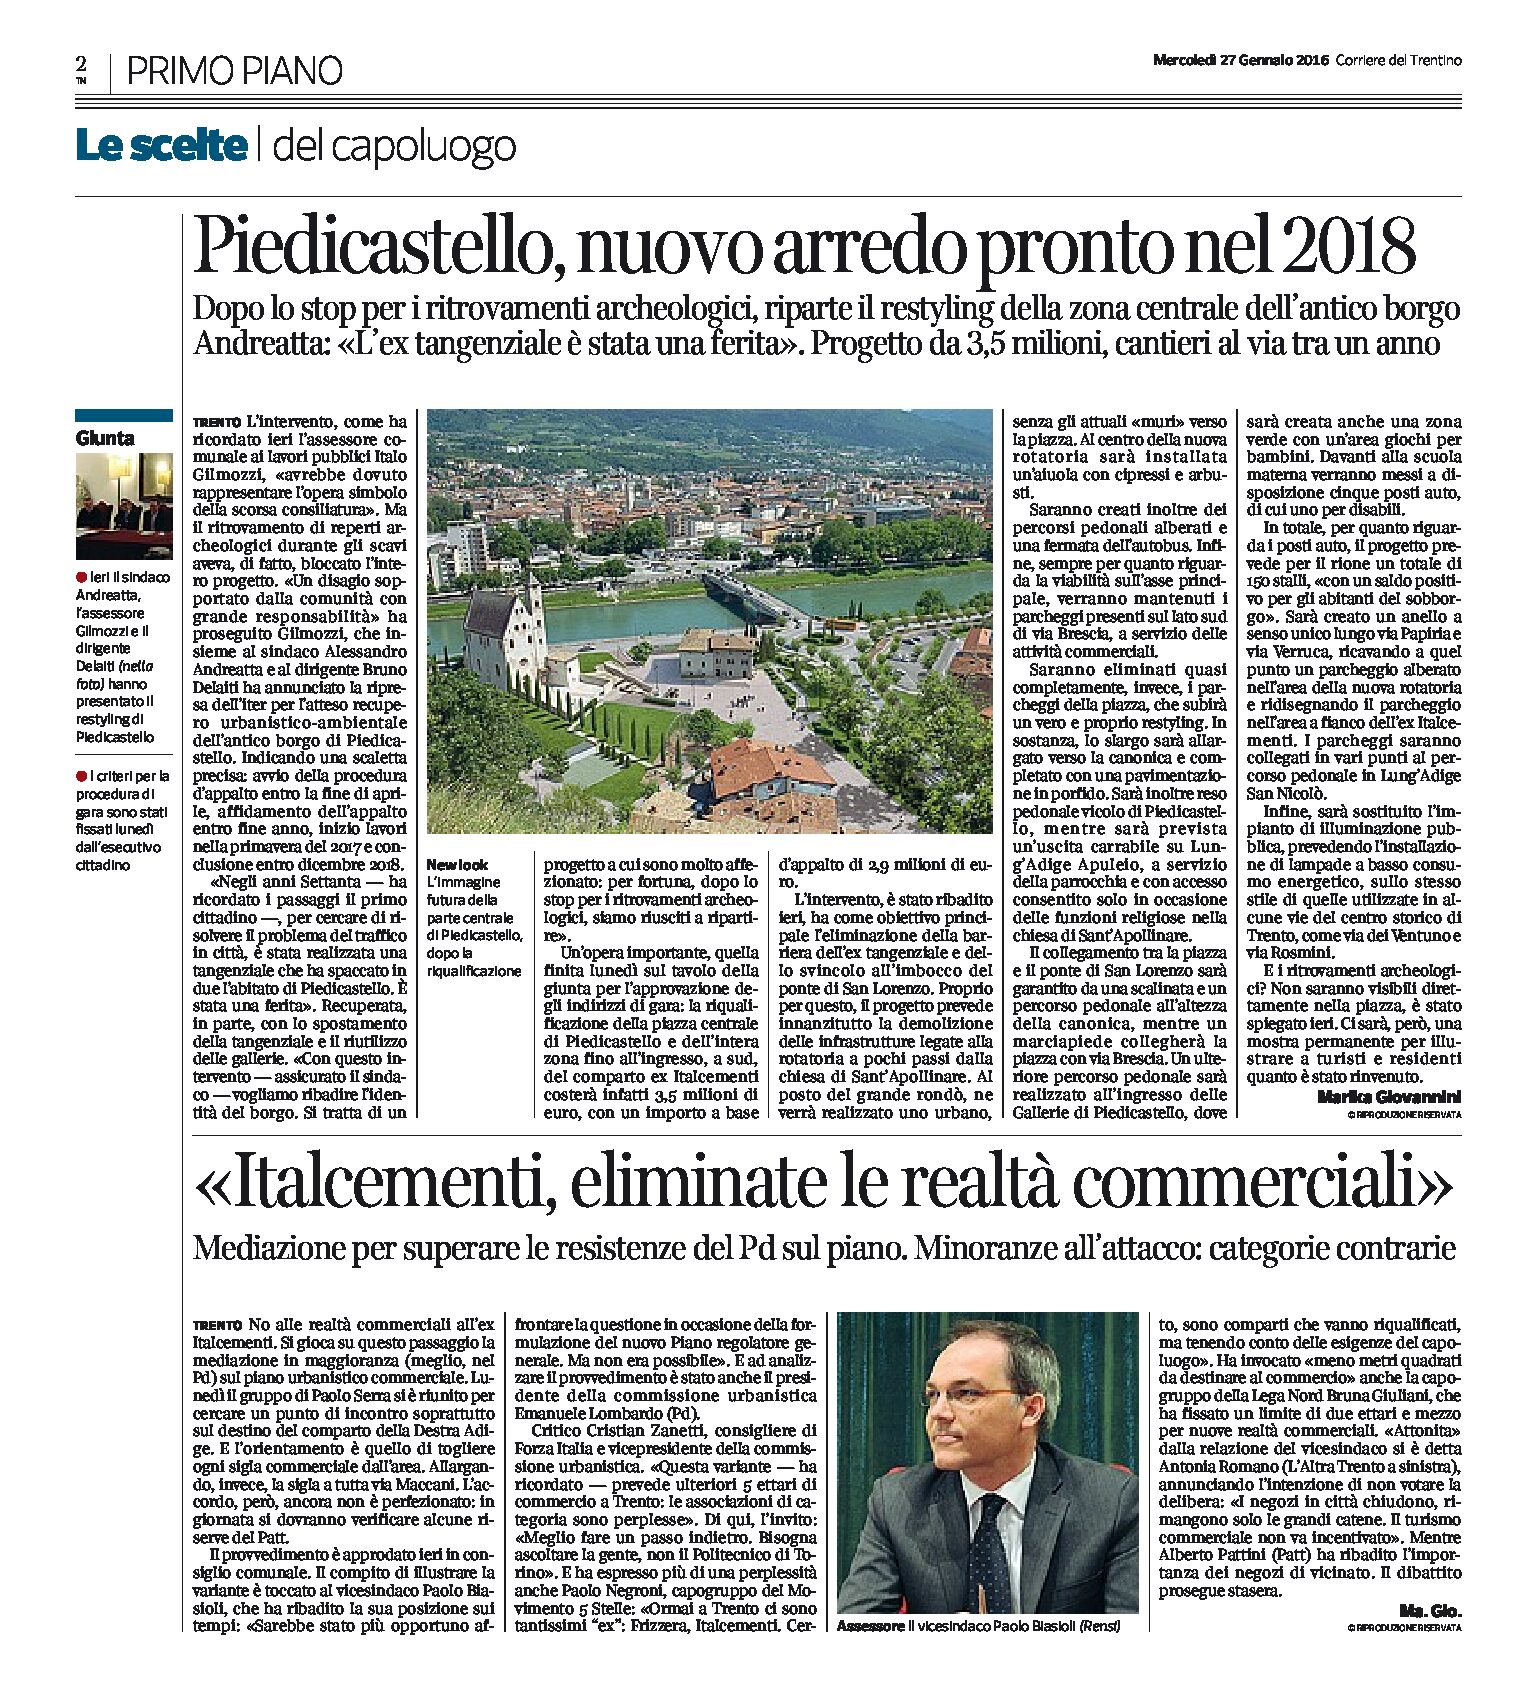 Destra Adige: il nuovo arredo di Piedicastello sarà pronto nel 2018, no alle realtà commerciali all’ex Italcementi